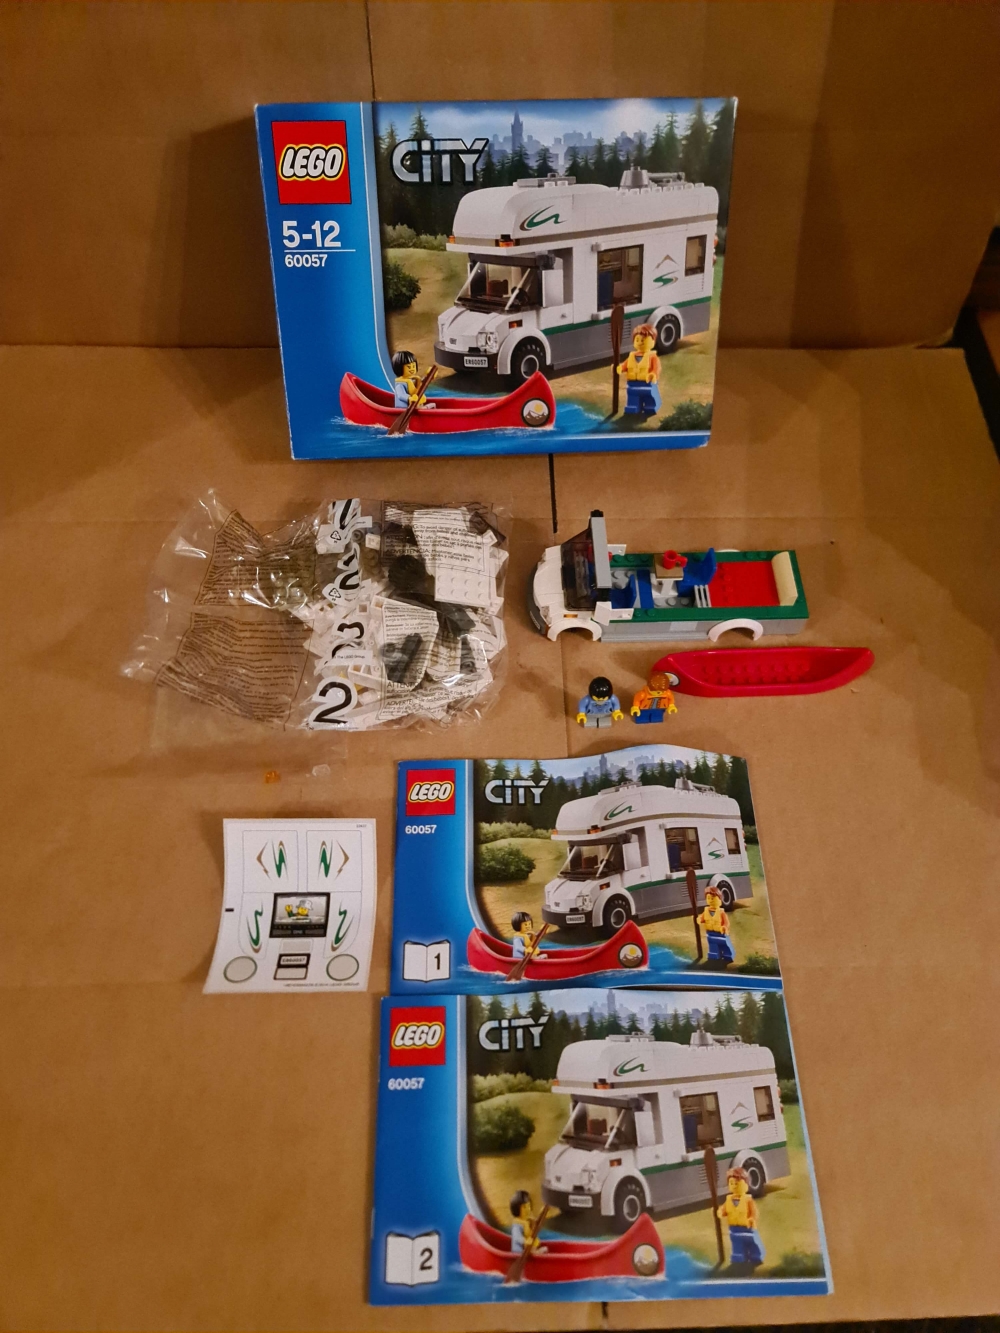 Sett 60057 fra Lego City serien.
Komplett, kun påbegynt.
Med manualer og eske.